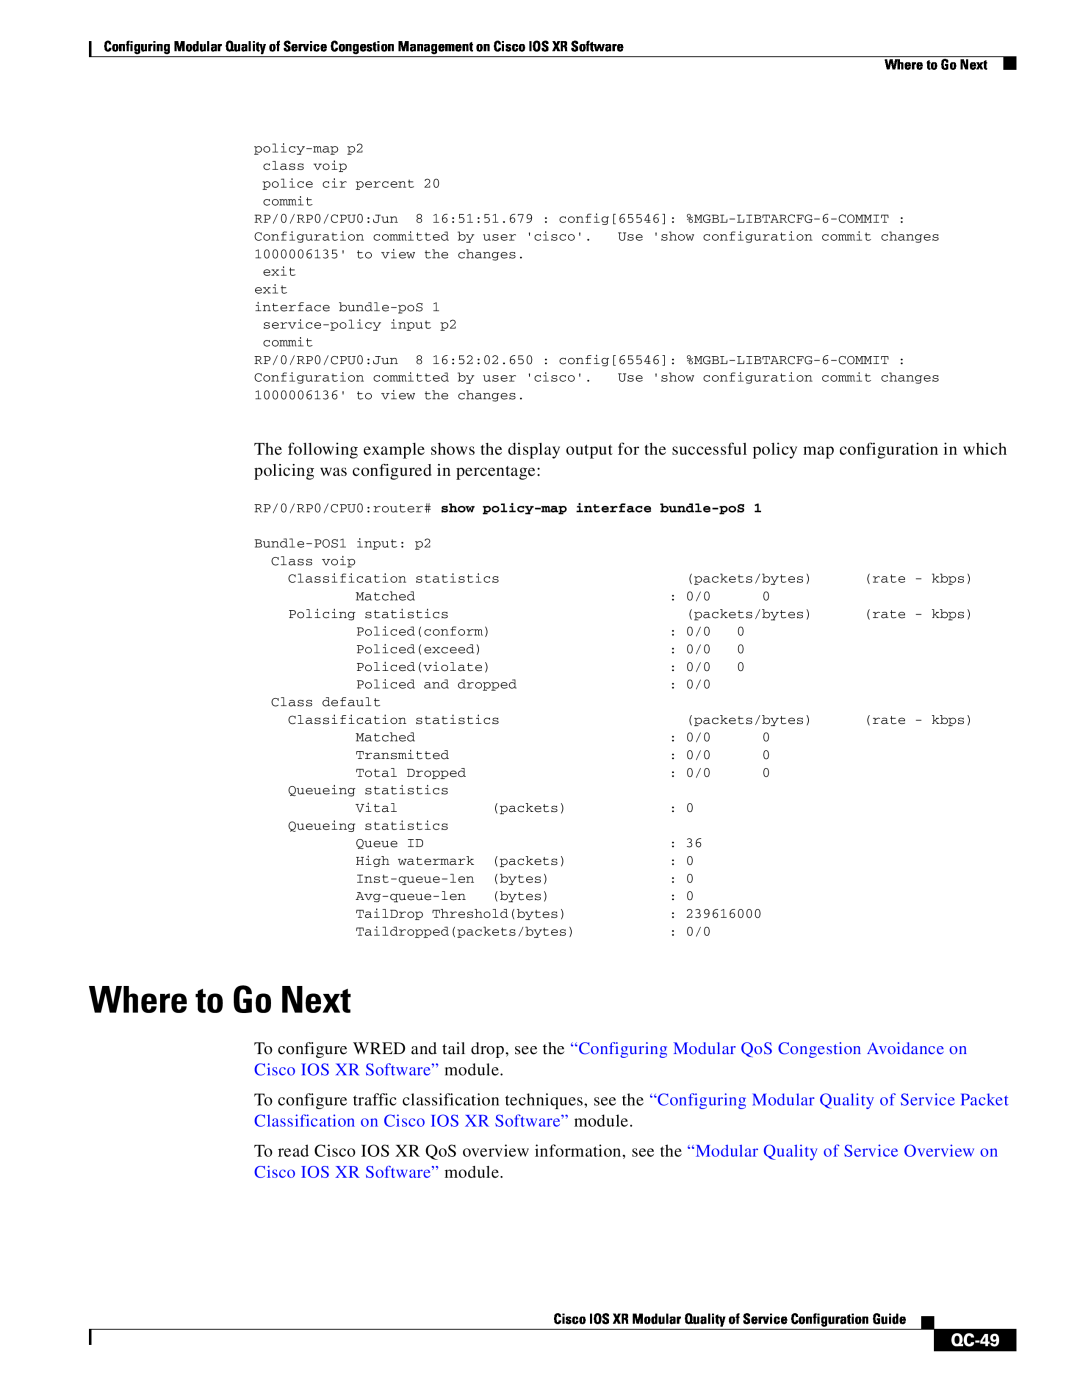 Cisco Systems QC-29 manual Where to Go Next, QC-49 